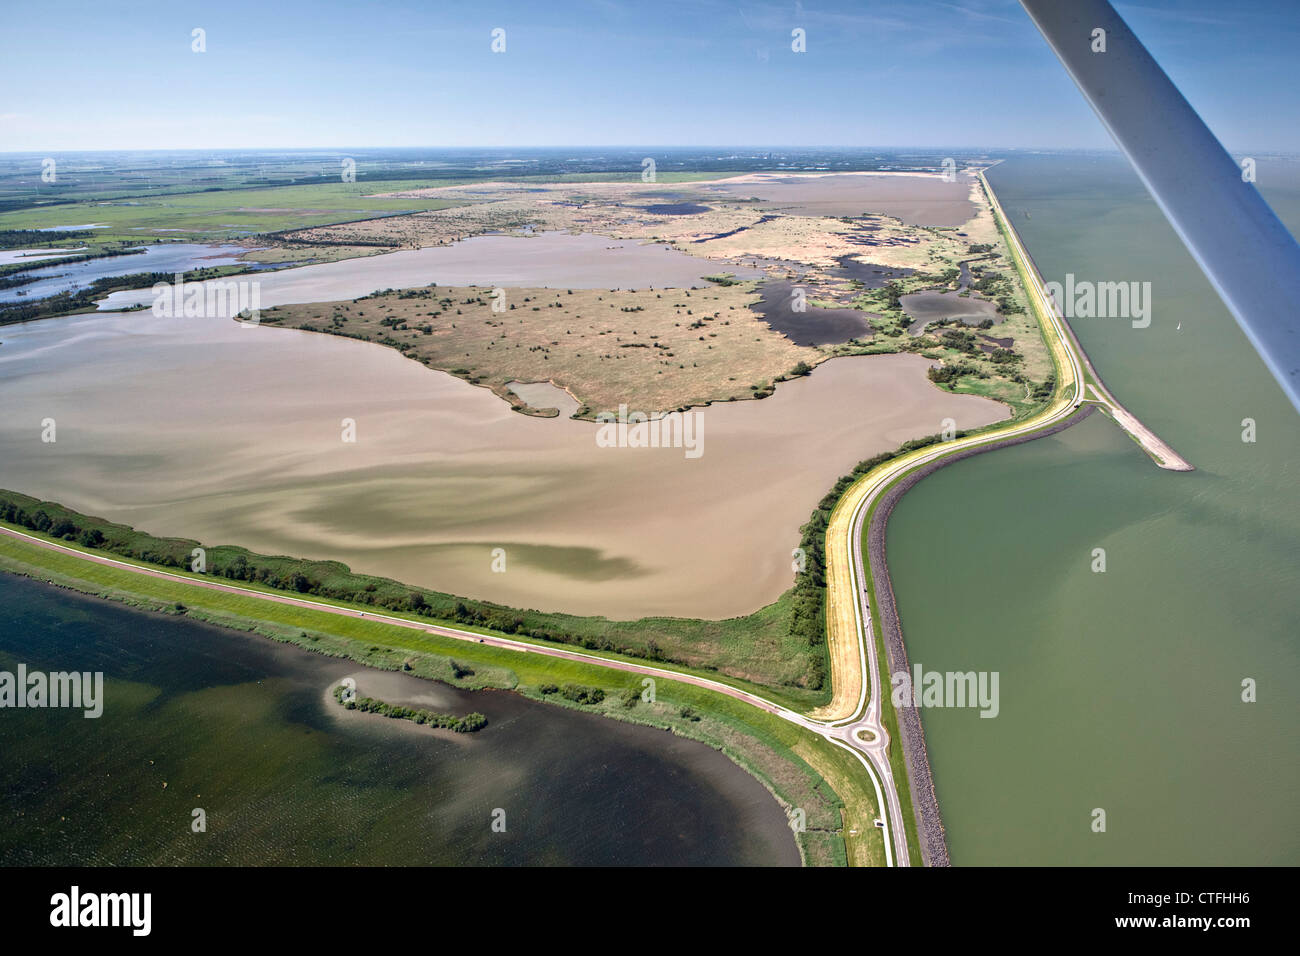 The Netherlands, Lelystad. National Park called Oostvaardersplassen. Aerial. Wetlands. Stock Photo